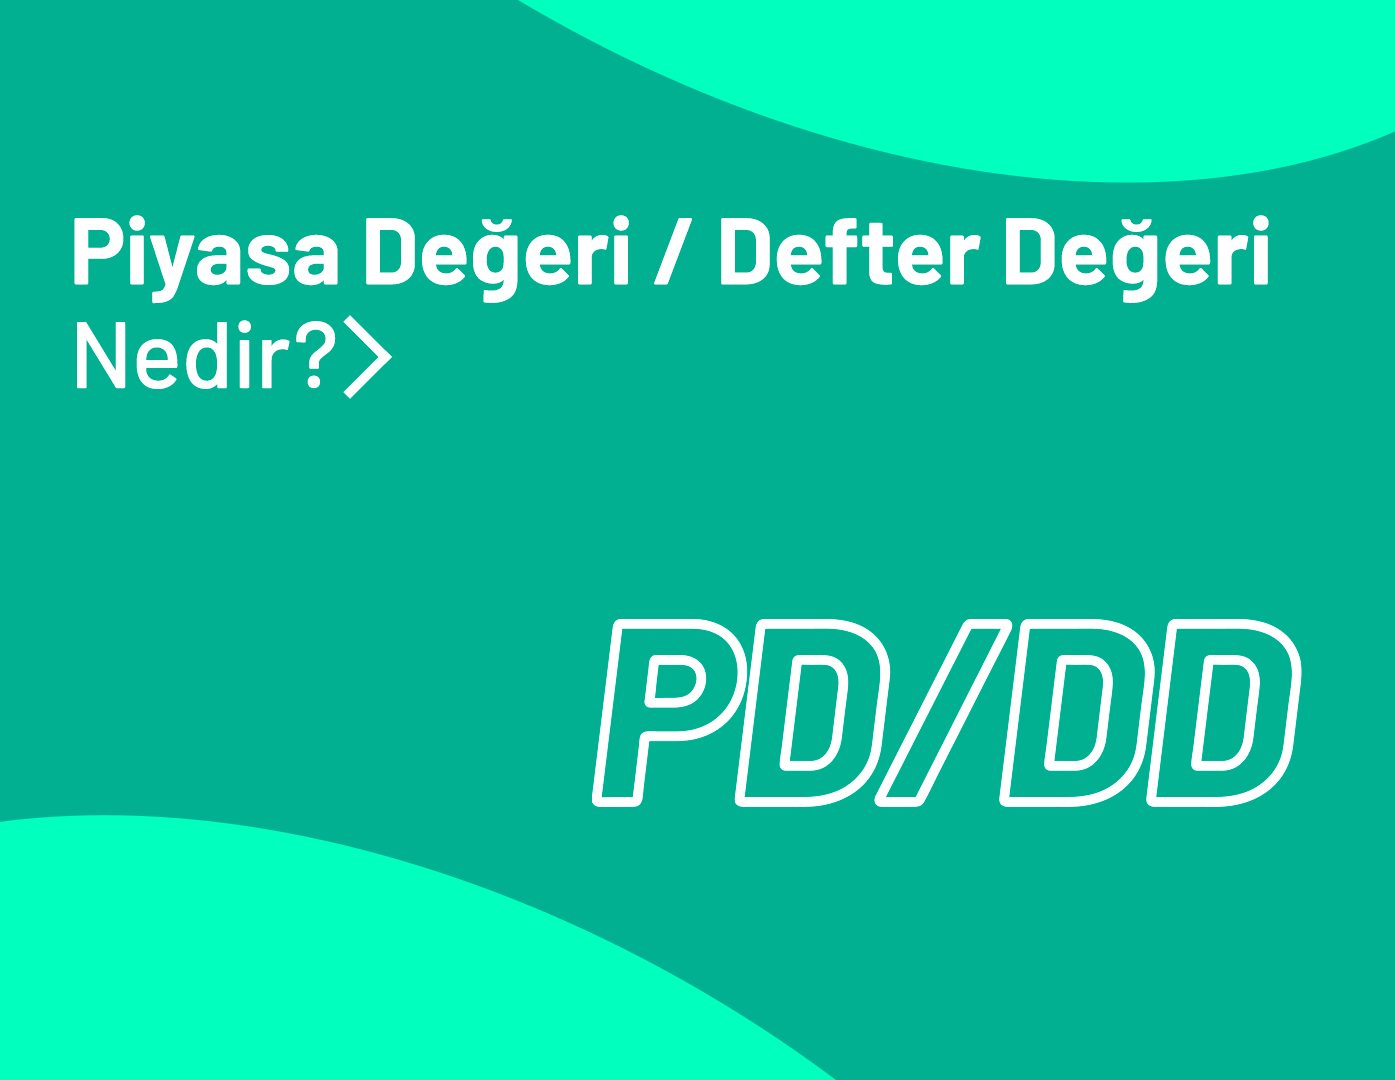 PD/DD (Piyasa Değeri / Defter Değeri) Nedir?